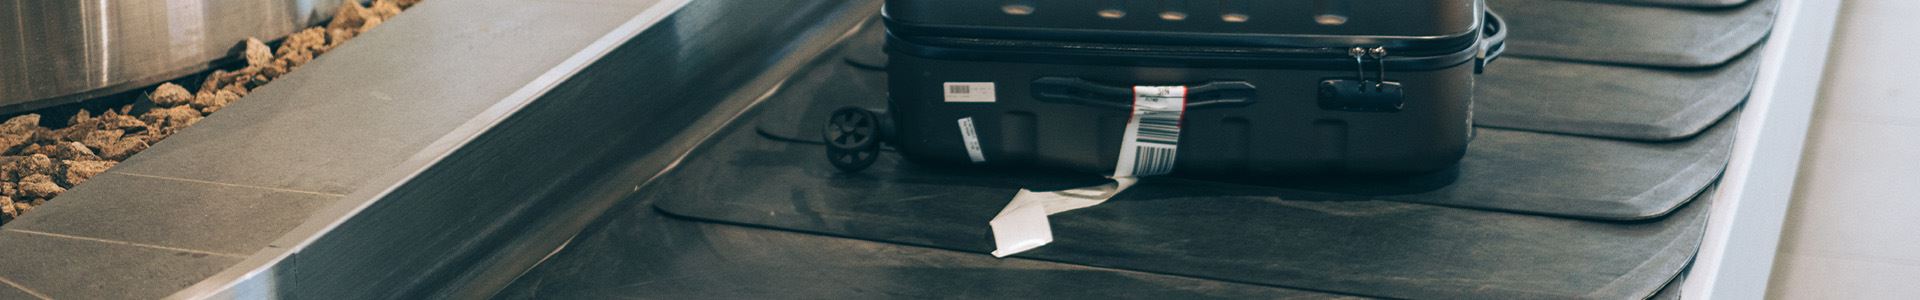 Zdjęcie przedstawiające czarną, twardą torbę podręczną z górnymi i bocznymi uchwytami oraz białą etykietębagażową na bocznym uchwycie, leżącą na karuzeli bagażowej na lotnisku.